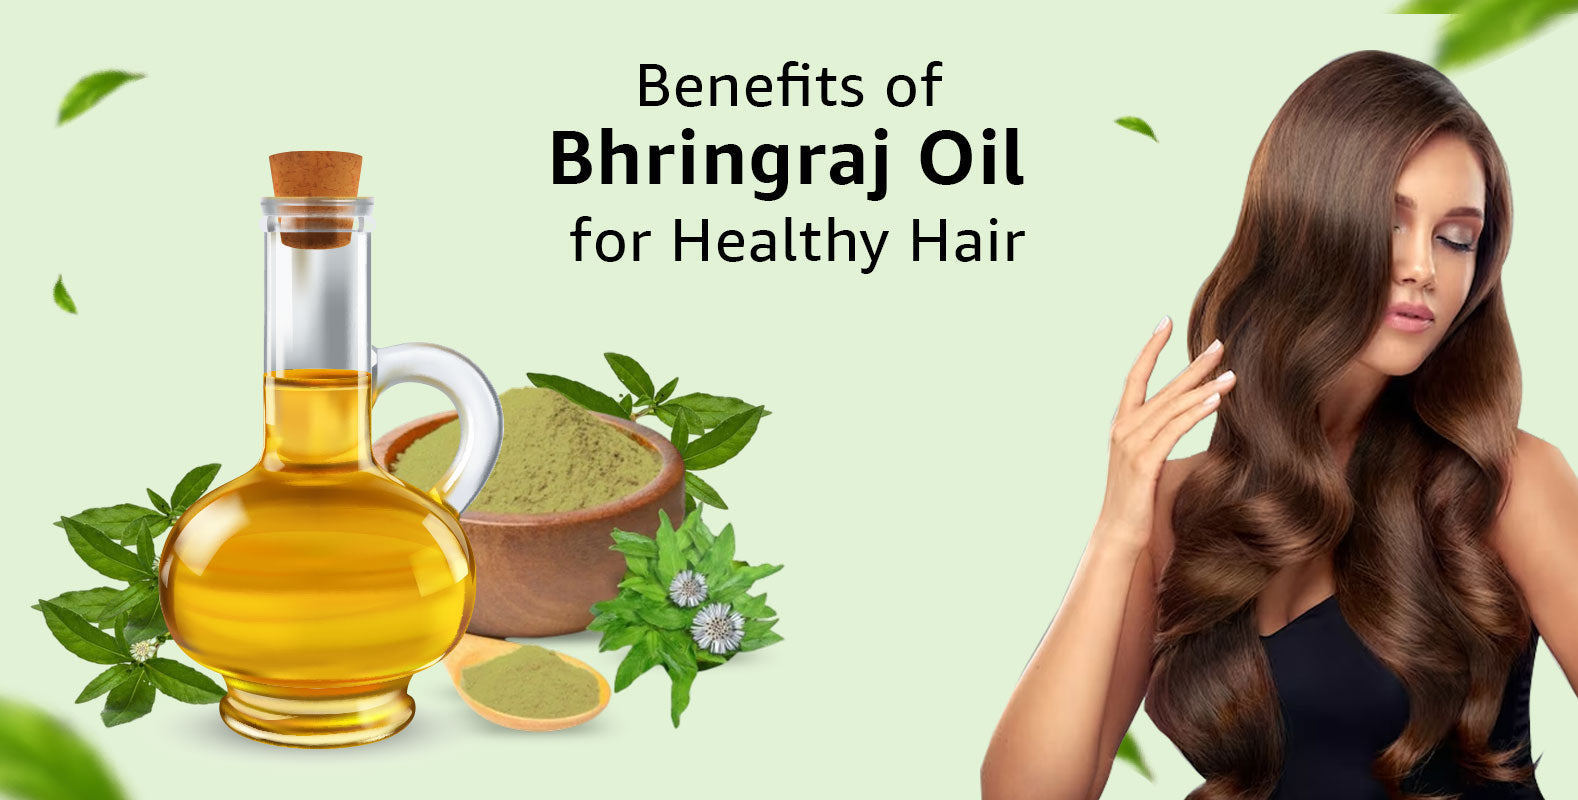 Bhringraj Oil for Hair